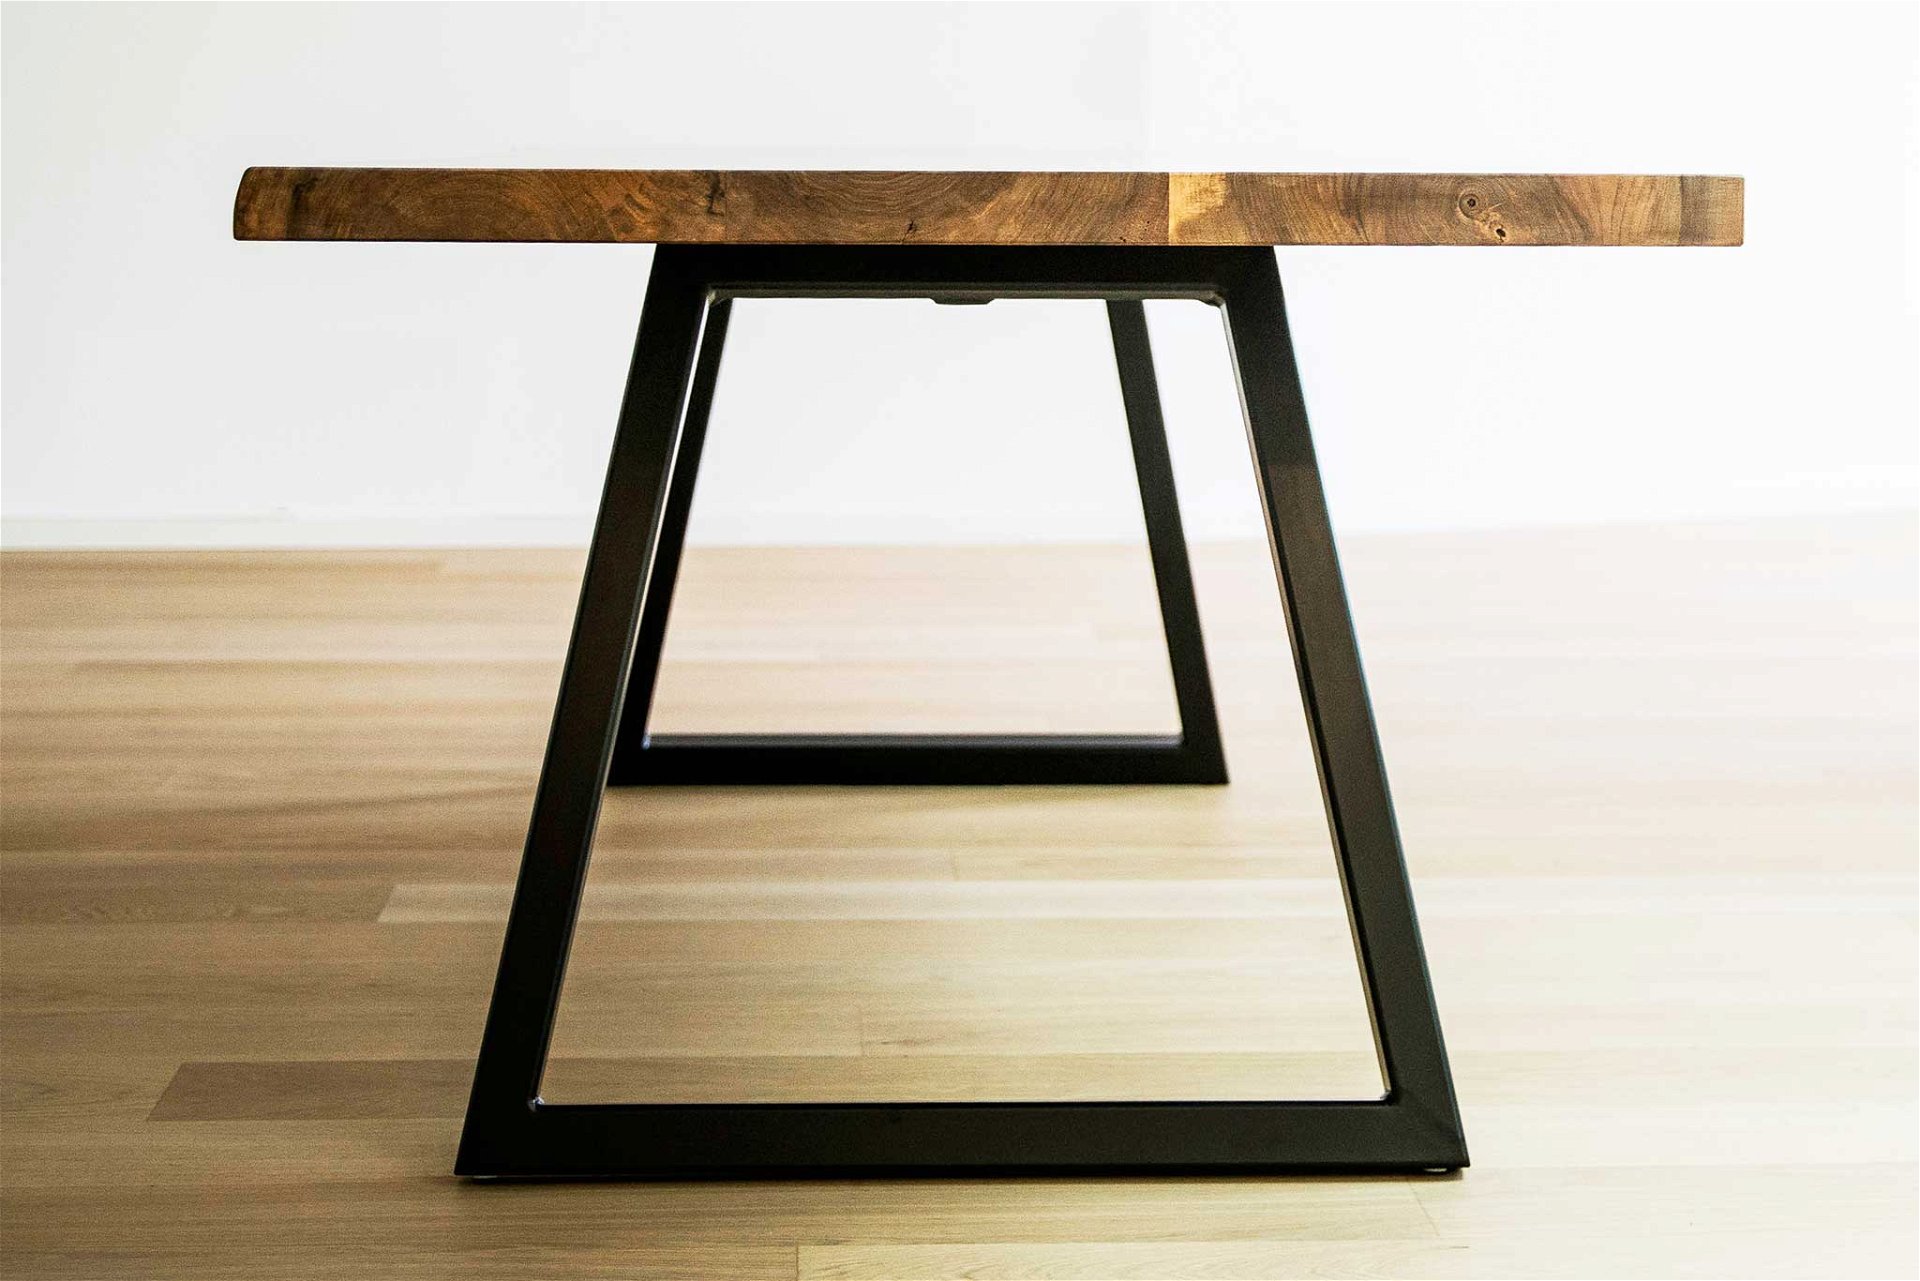 Die Tischbeine werden aus schlichtem, hochwertigem Stahl gefertigt und lenken nicht vom Holz selbst ab. Eine klare Linienführung kommt zum Einsatz. tischmitte.net